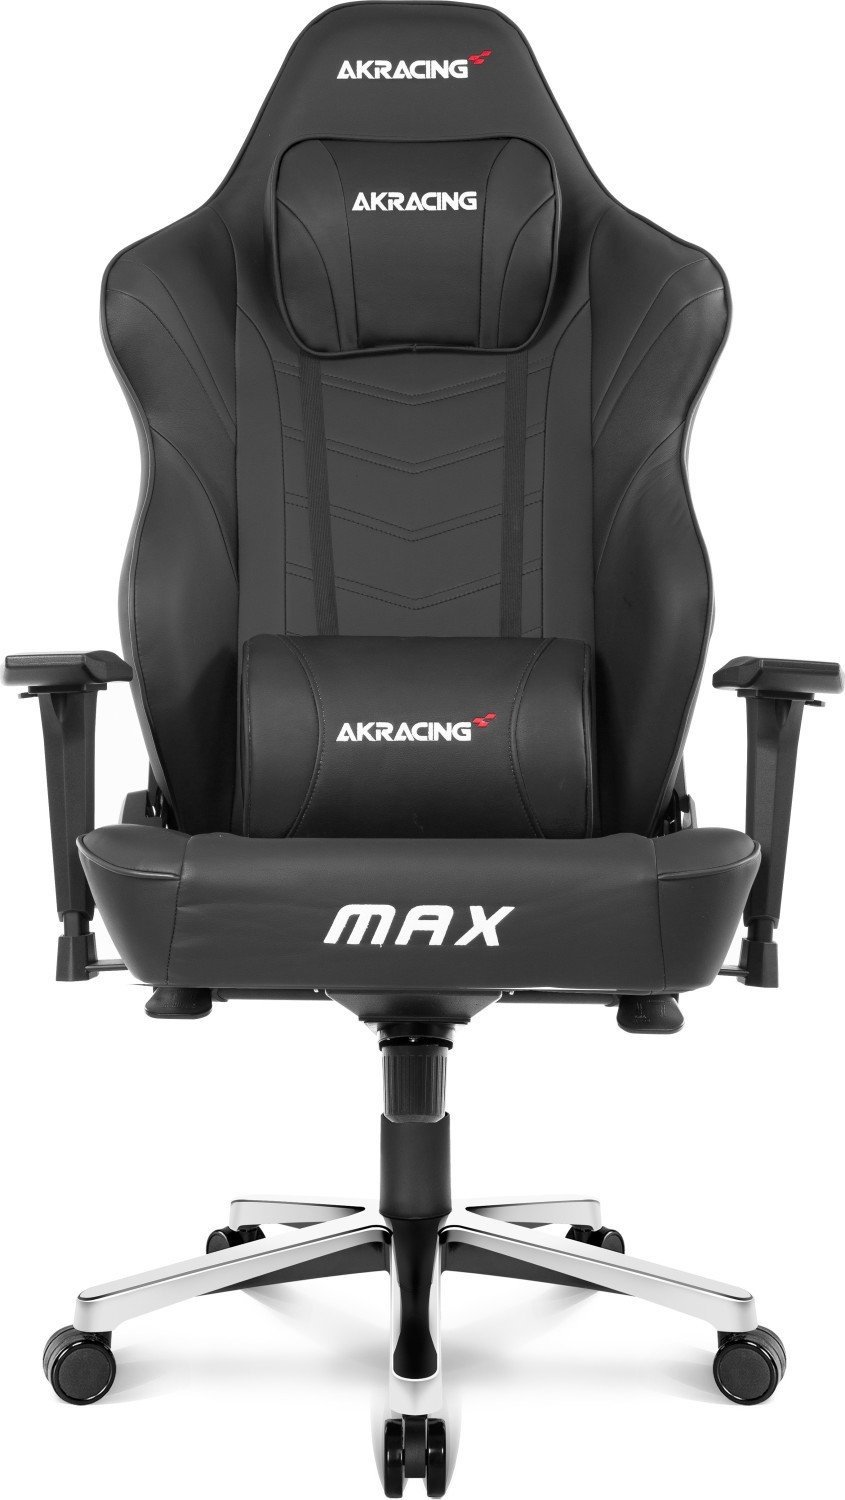 Bild von Master Max Gaming Chair schwarz